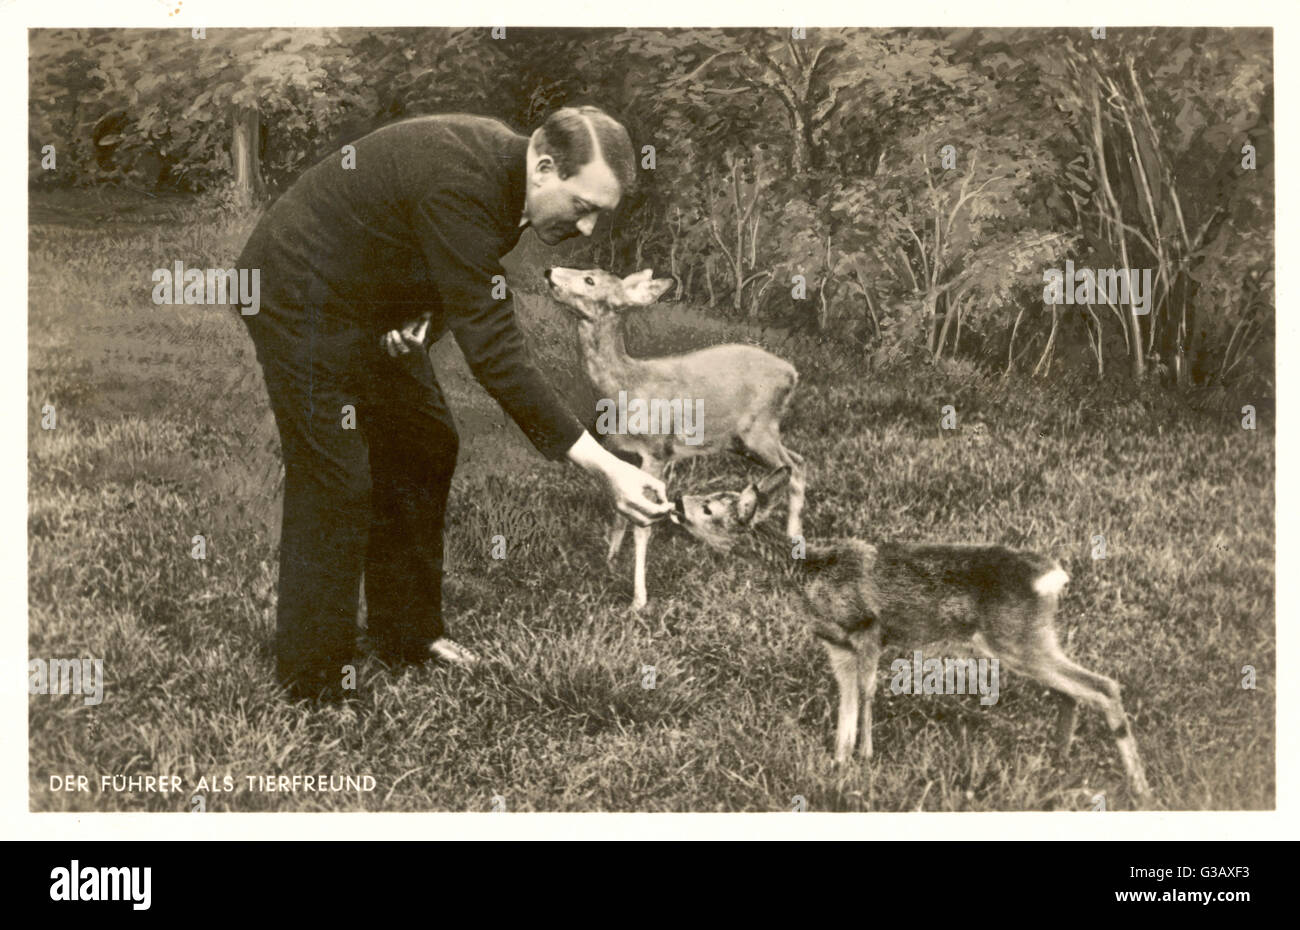 'Der Fuhrer als Tierfreund' Hitler as animal-lover         Date: 1930s Stock Photo